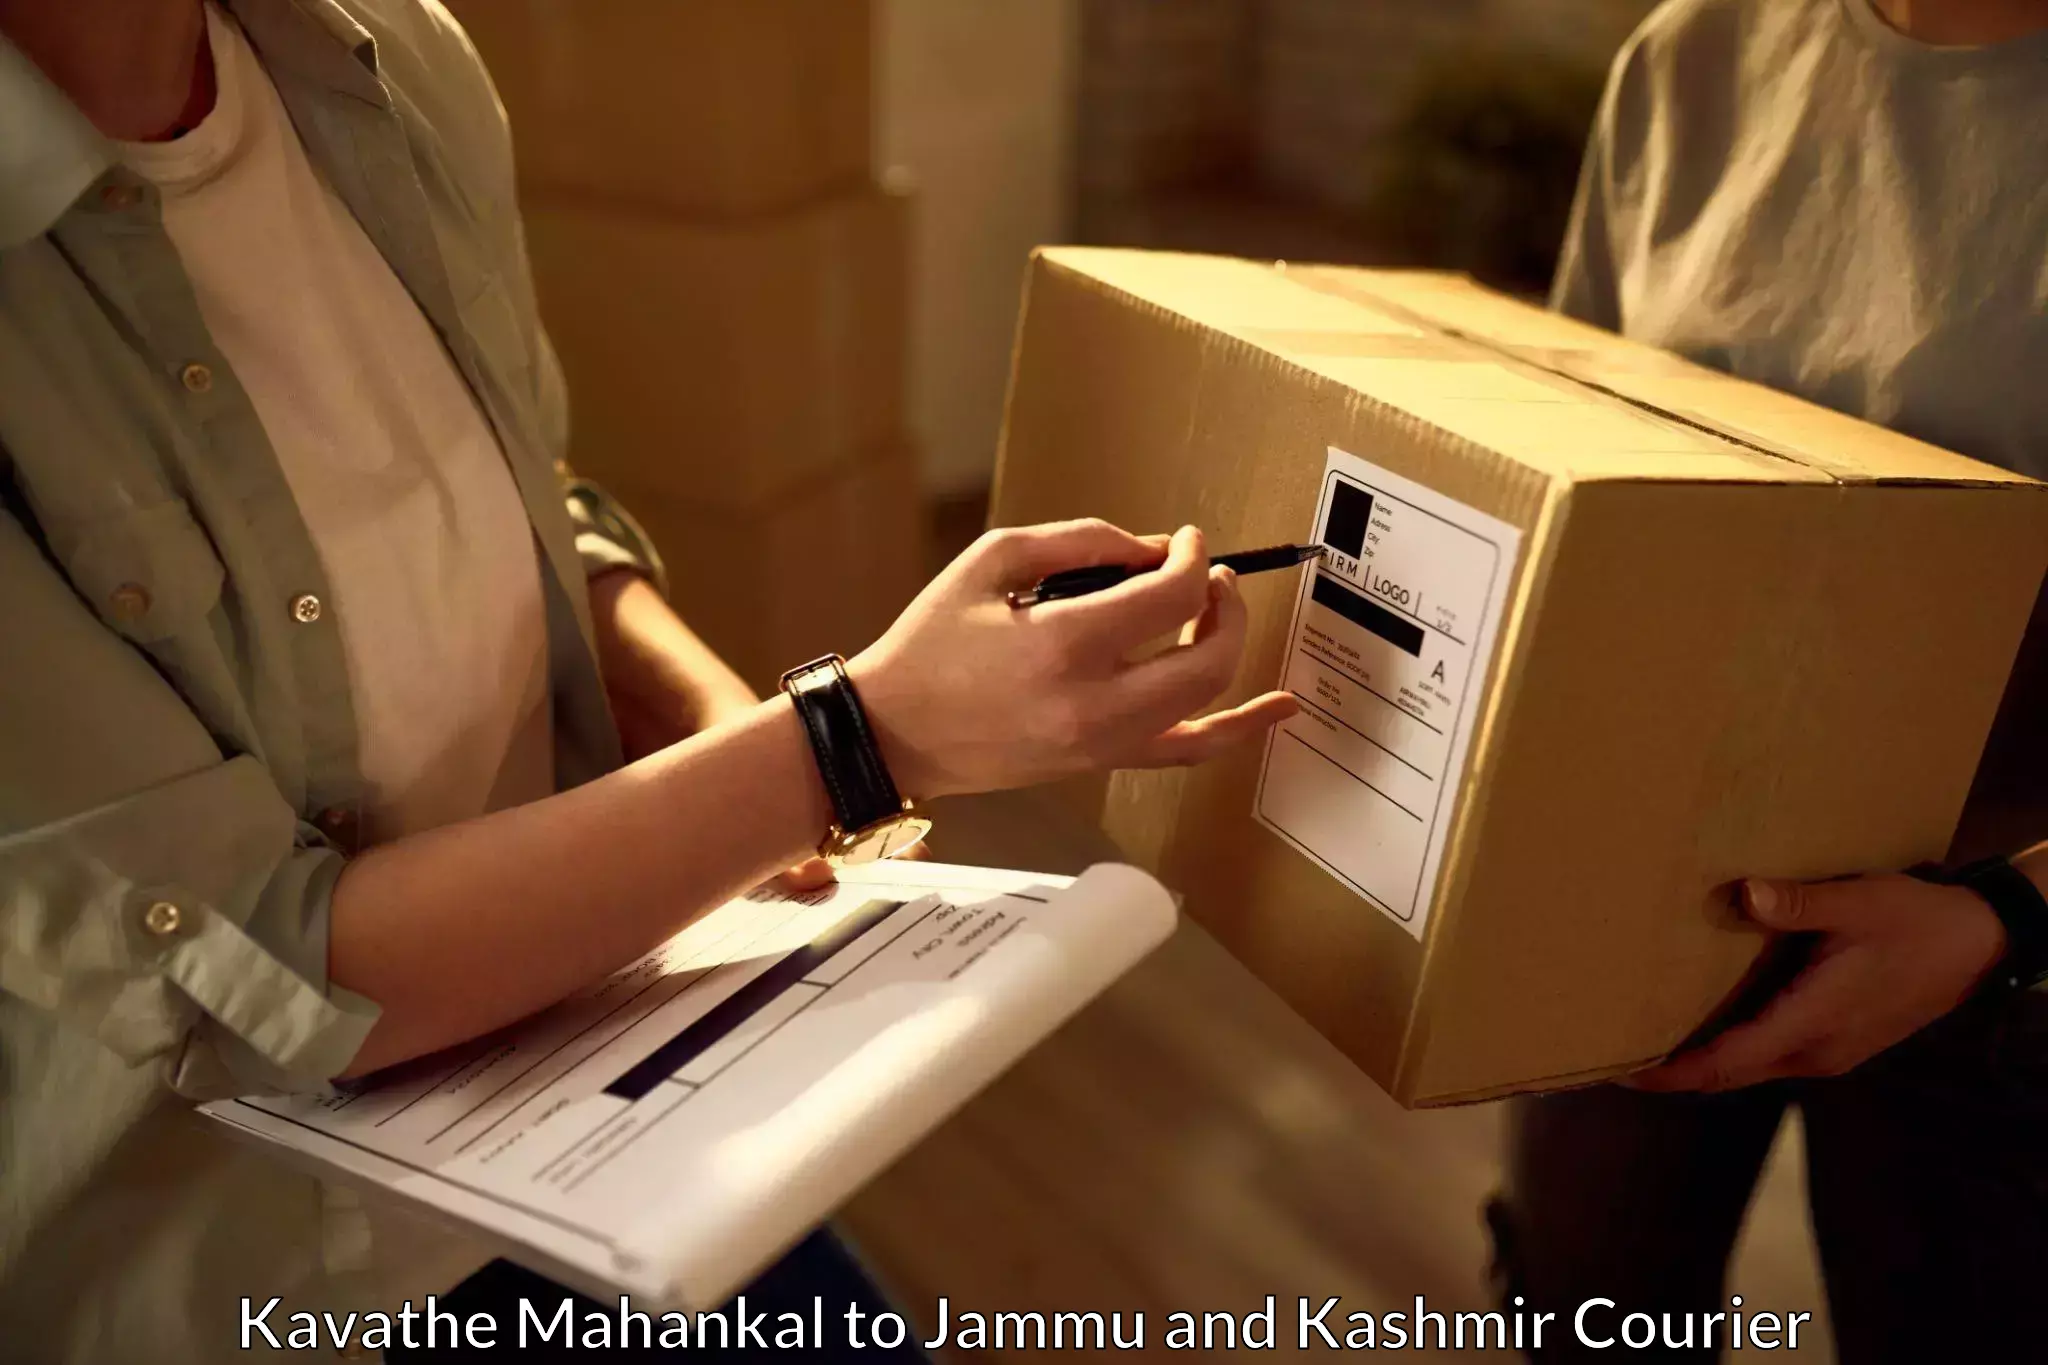 Business logistics support Kavathe Mahankal to Jammu and Kashmir